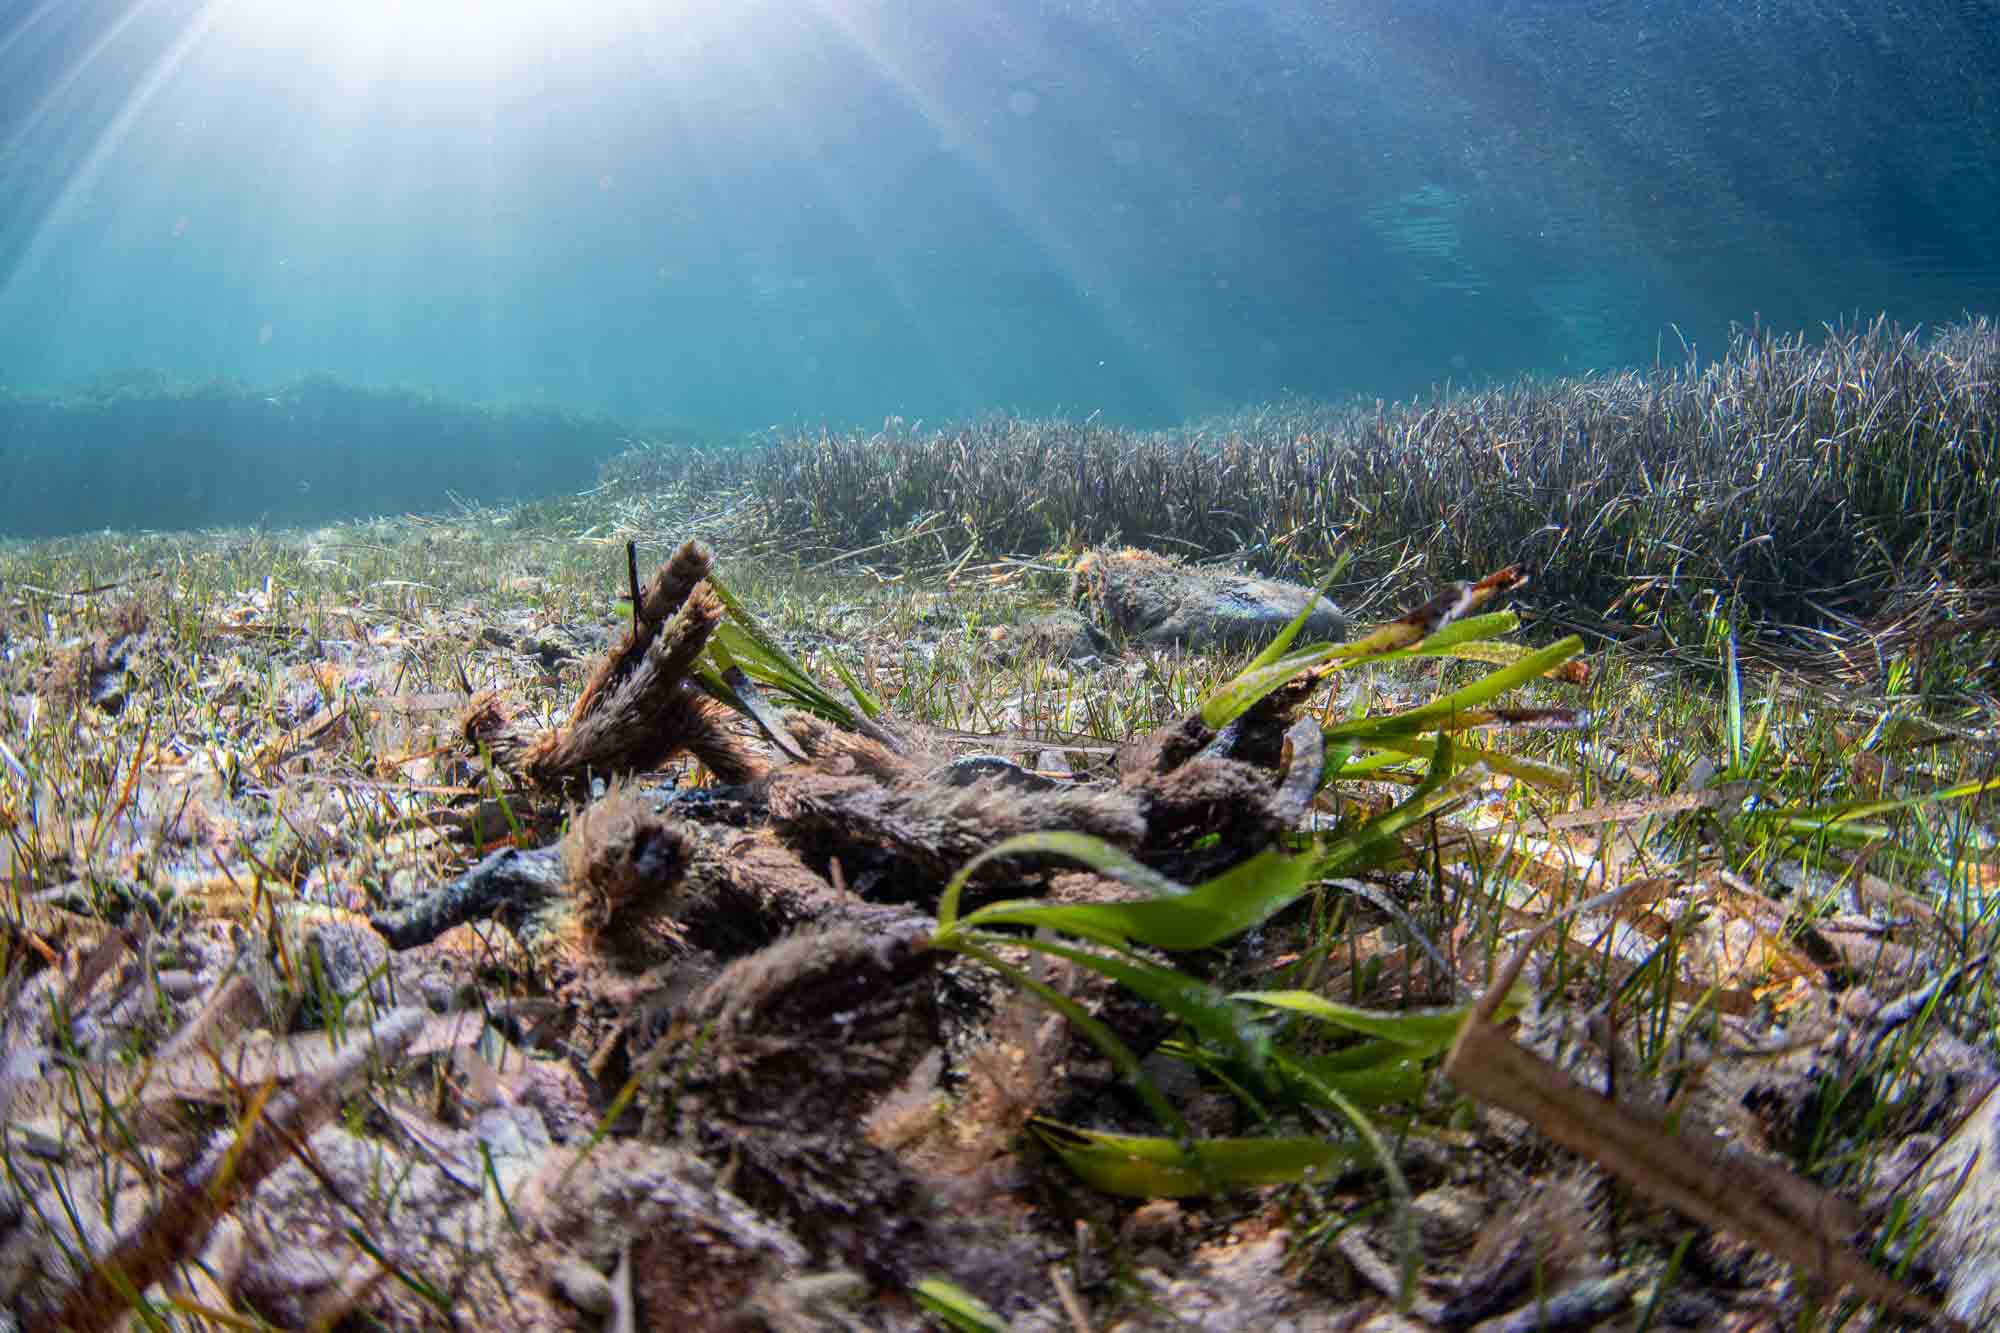 La bahía de Pollença “al límite de su carga ecológica” según un estudio realizado por Arrels Marines